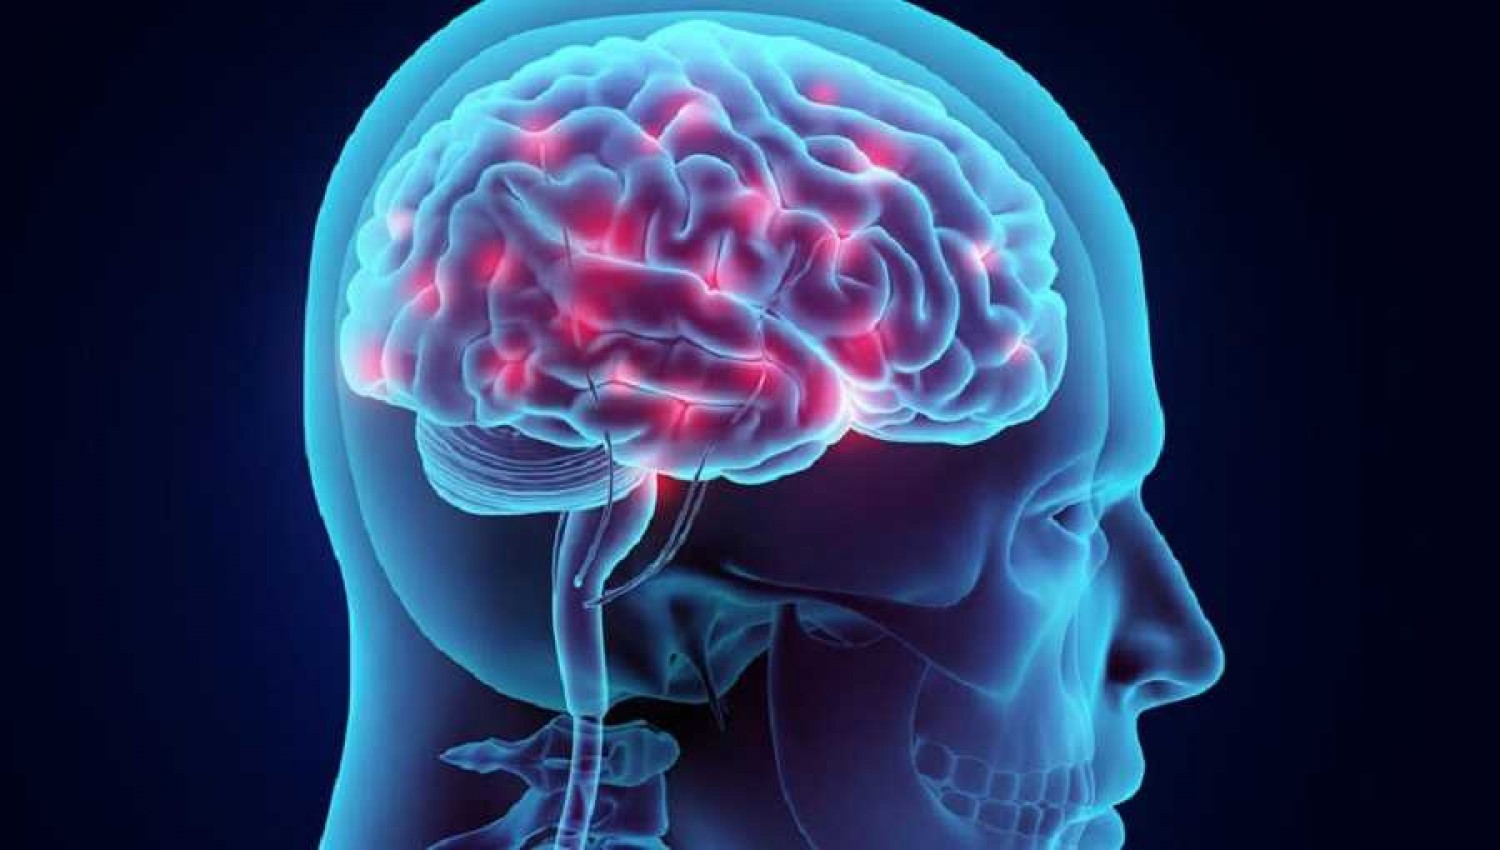 Ποιος παράγοντας μπορεί να προκαλέσει συρρίκνωση του εγκεφάλου